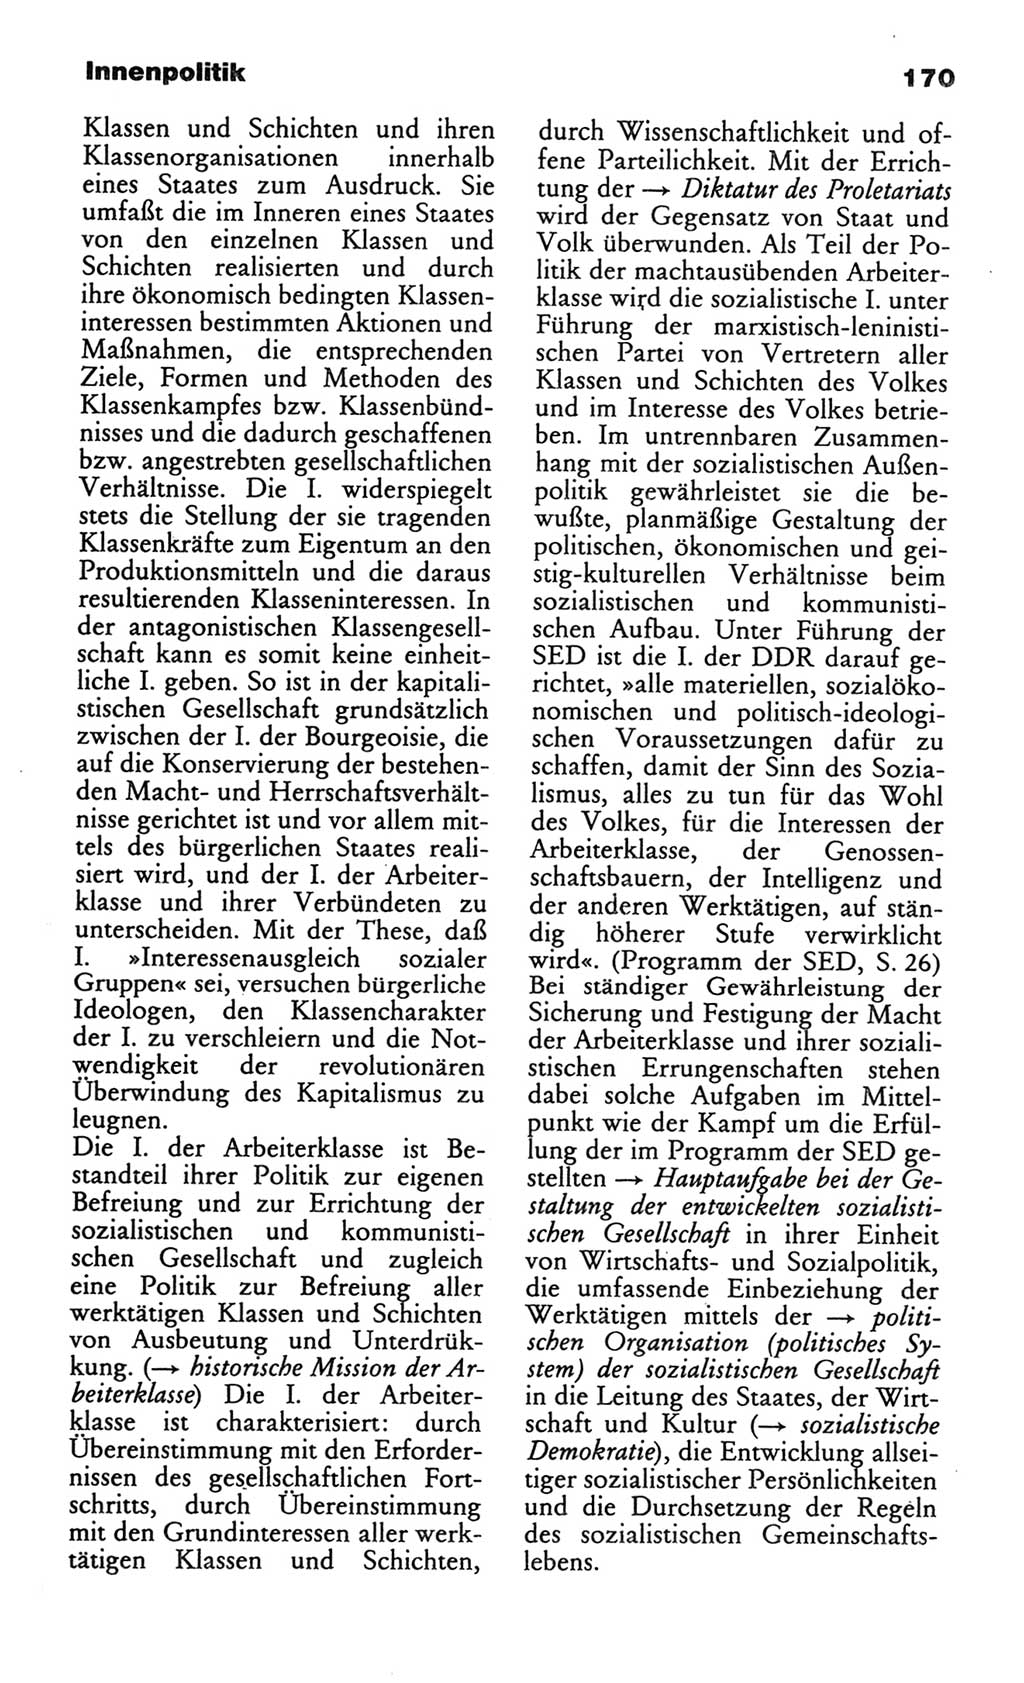 Wörterbuch des wissenschaftlichen Kommunismus [Deutsche Demokratische Republik (DDR)] 1982, Seite 170 (Wb. wiss. Komm. DDR 1982, S. 170)